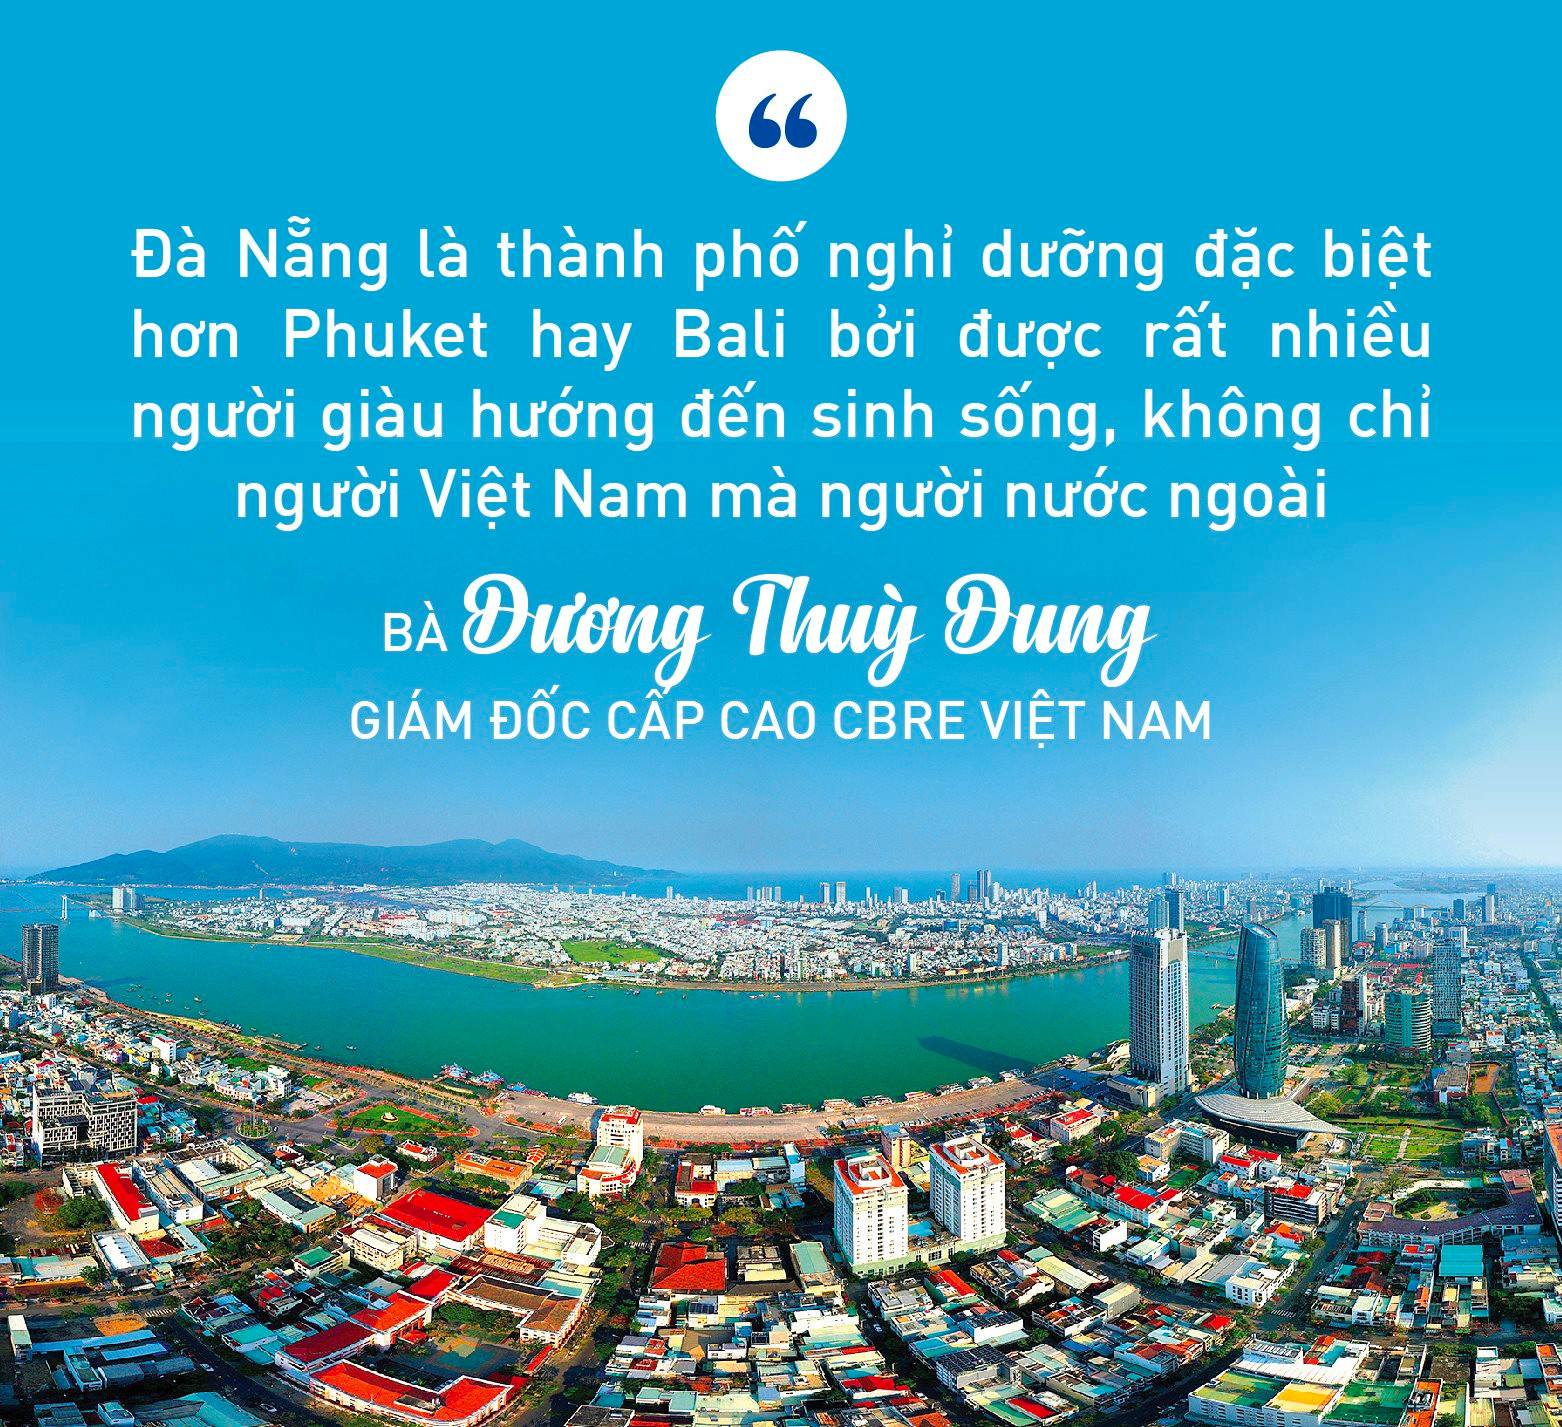 Sếp CBRE Việt Nam: Bất động sản Đà Nẵng đặc biệt bậc nhất khu vực Đông Nam Á - Ảnh 2.